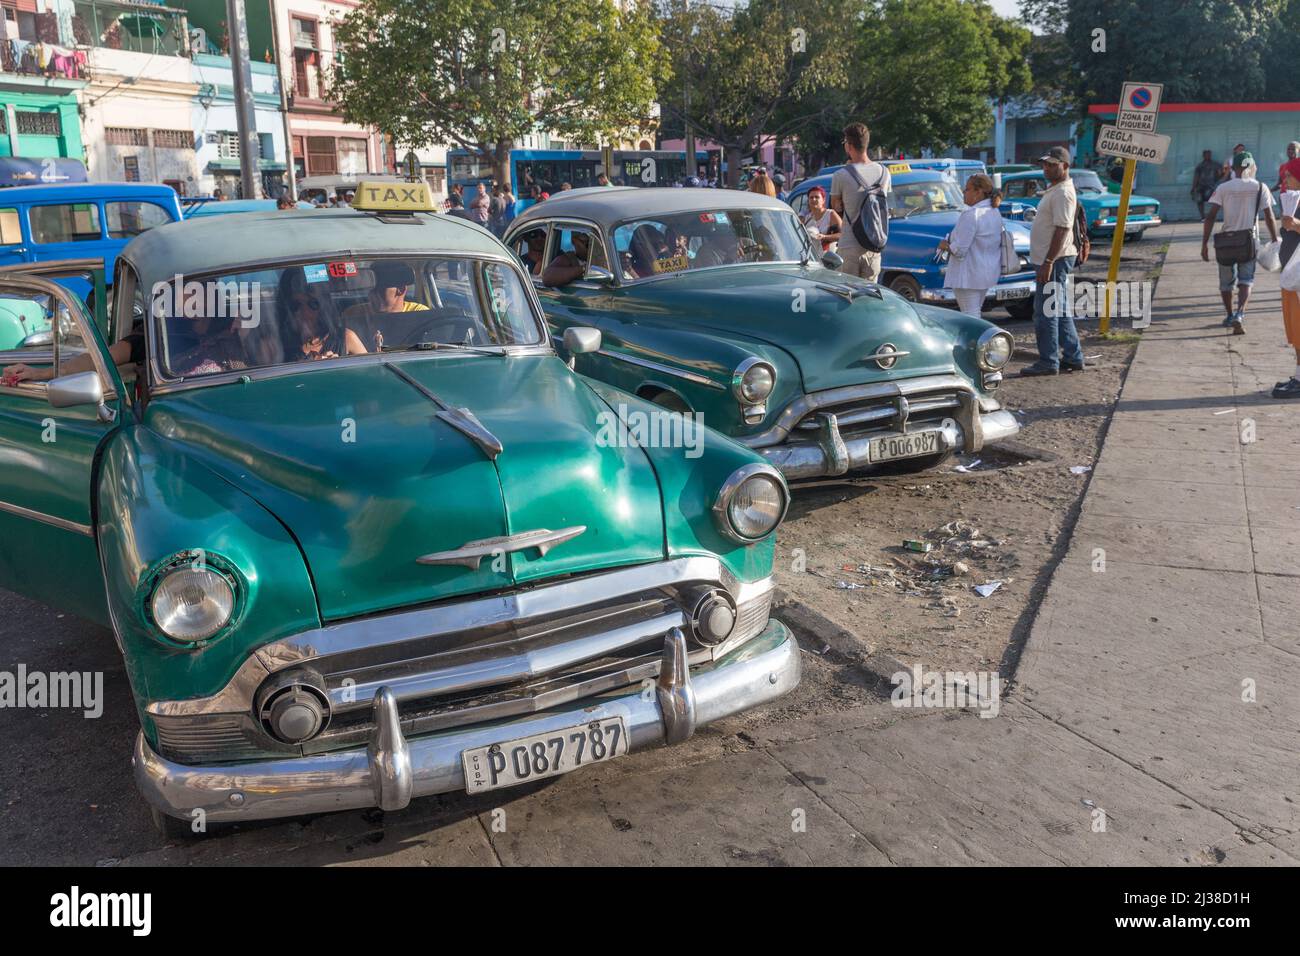 Taxis and Collectivos wait around Parque El Curita Stock Photo